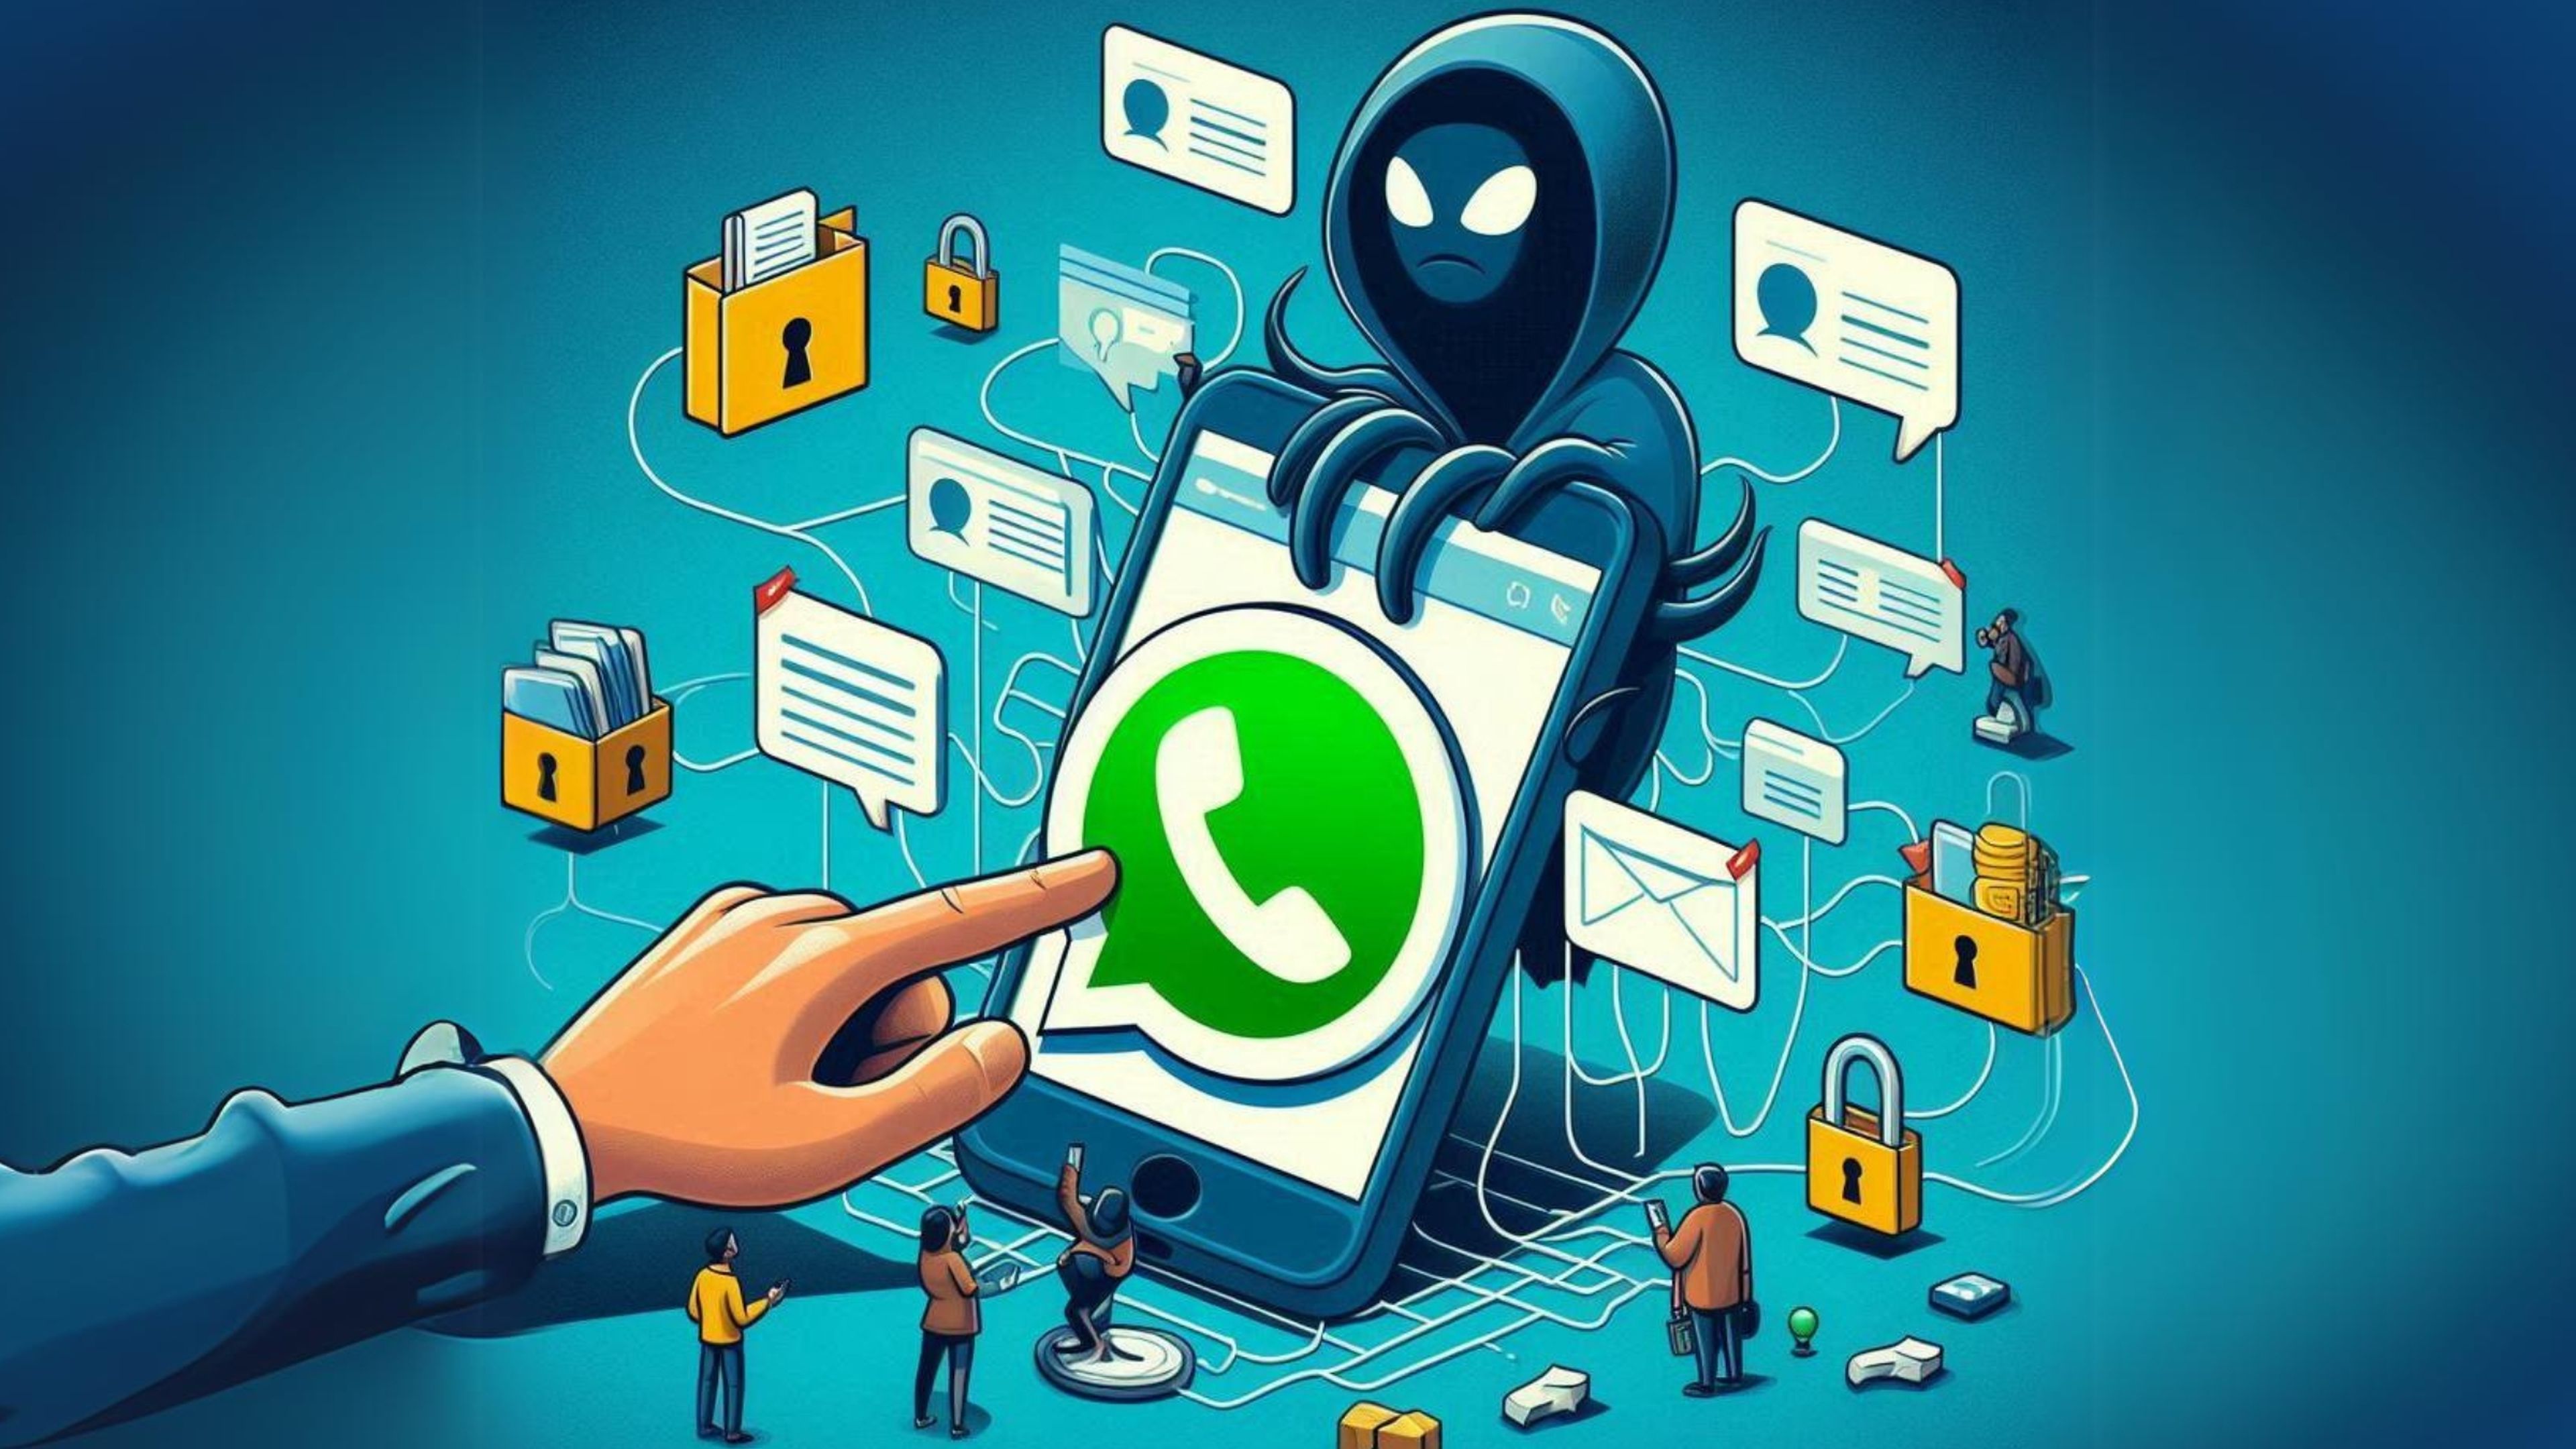 Con este truco podrás recuperar tu cuenta de WhatsApp hackeada en minutos